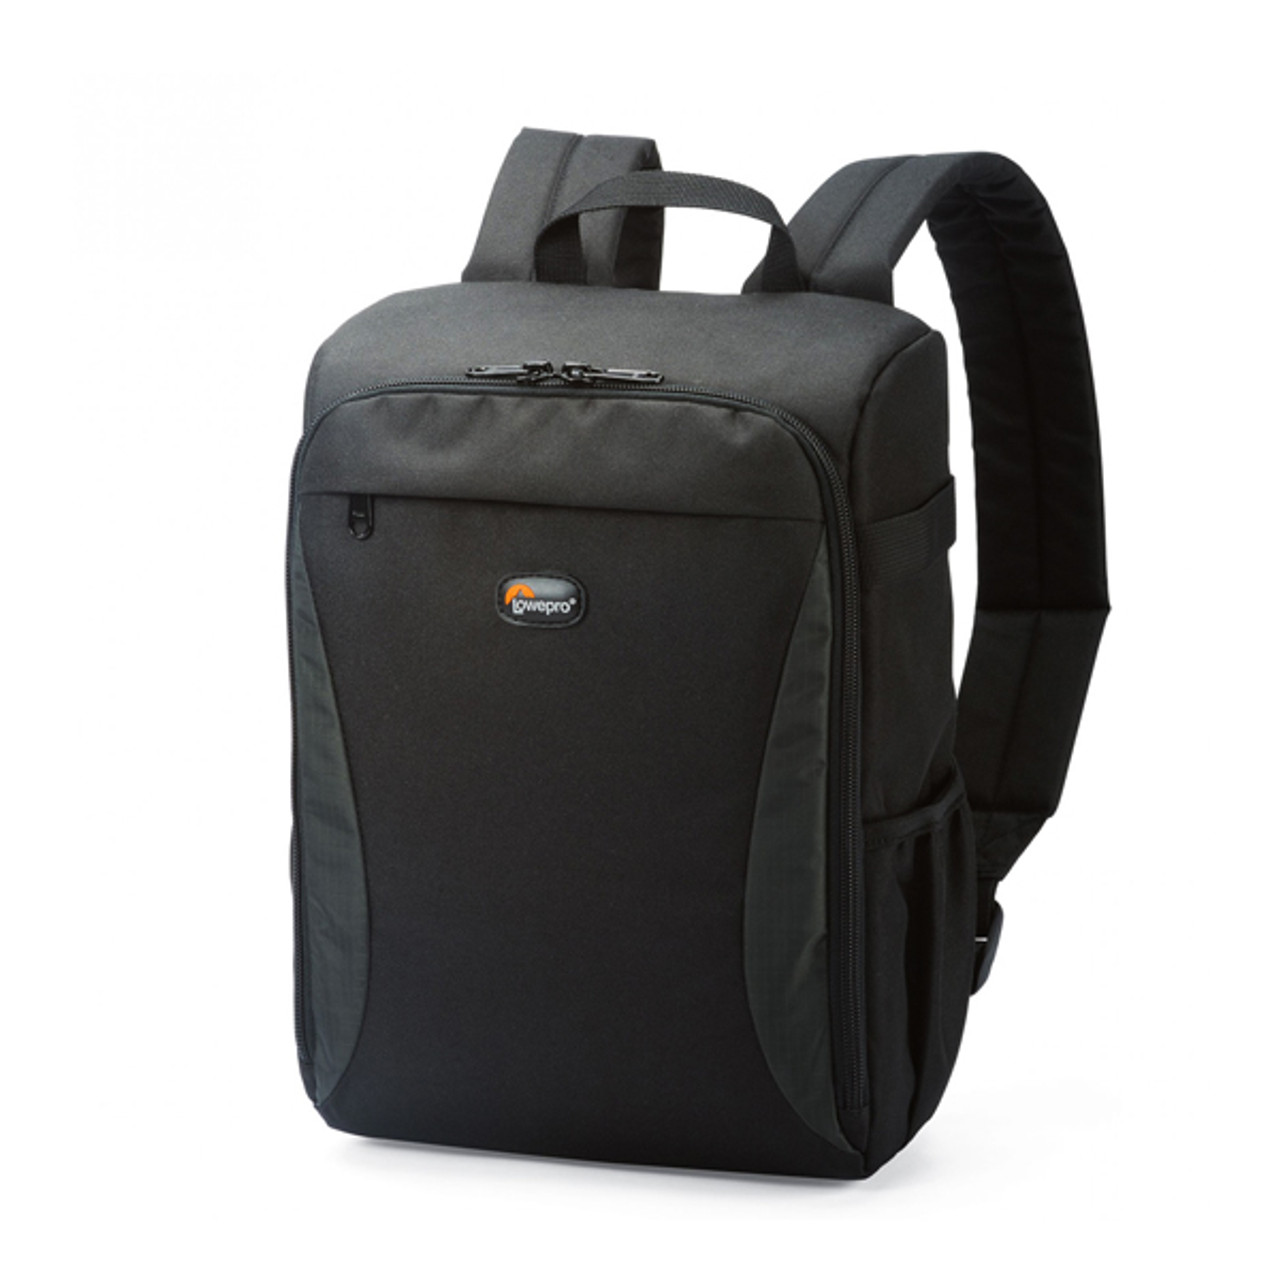 Lowepro Format Backpack 150